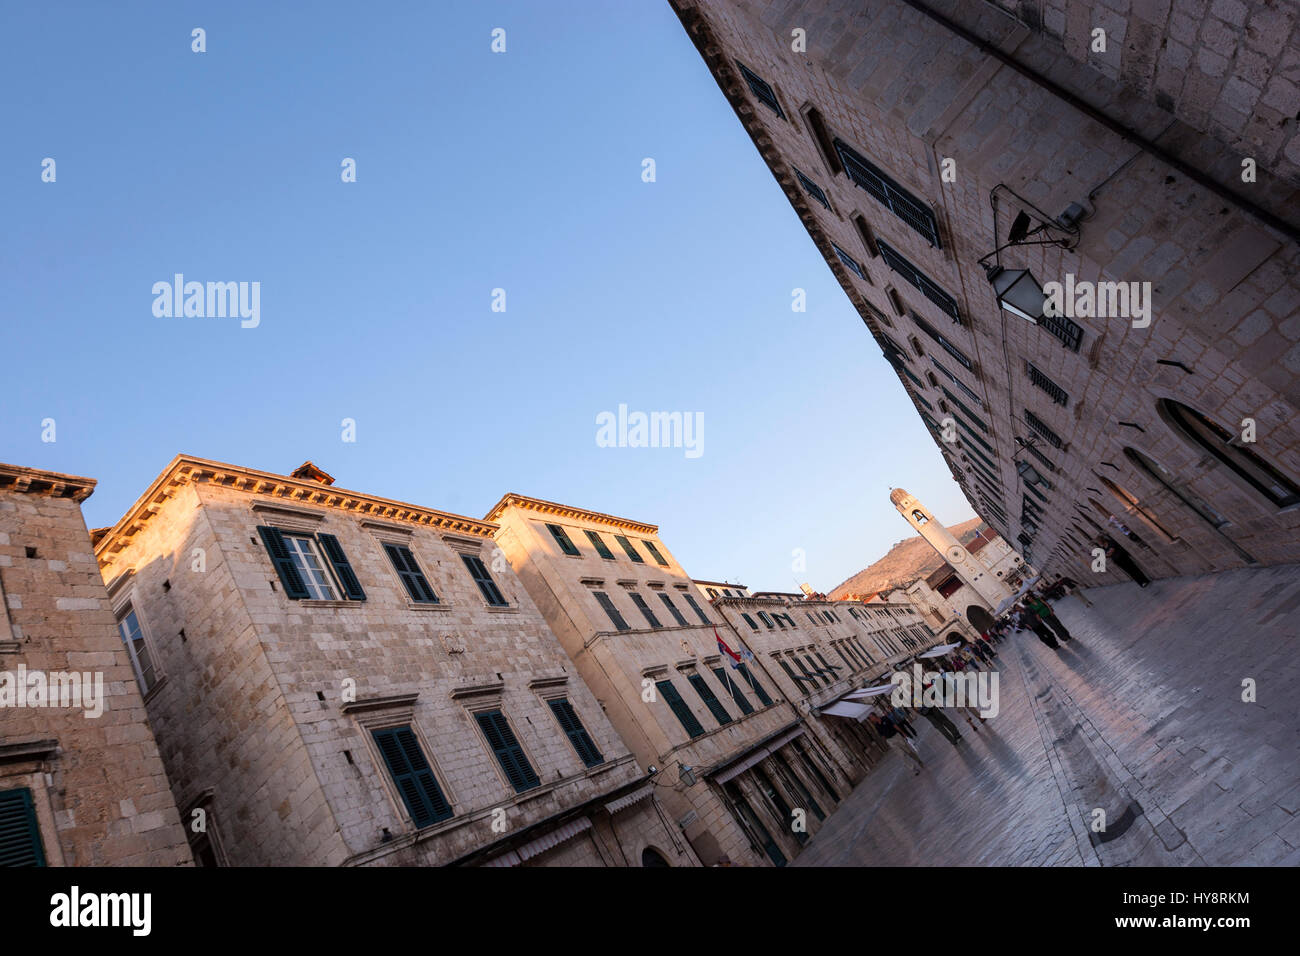 Stradun de Dubrovnik, de la rue piétonne pavée de calcaire, est la rue principale de Dubrovnik-Neretva, en Croatie Banque D'Images